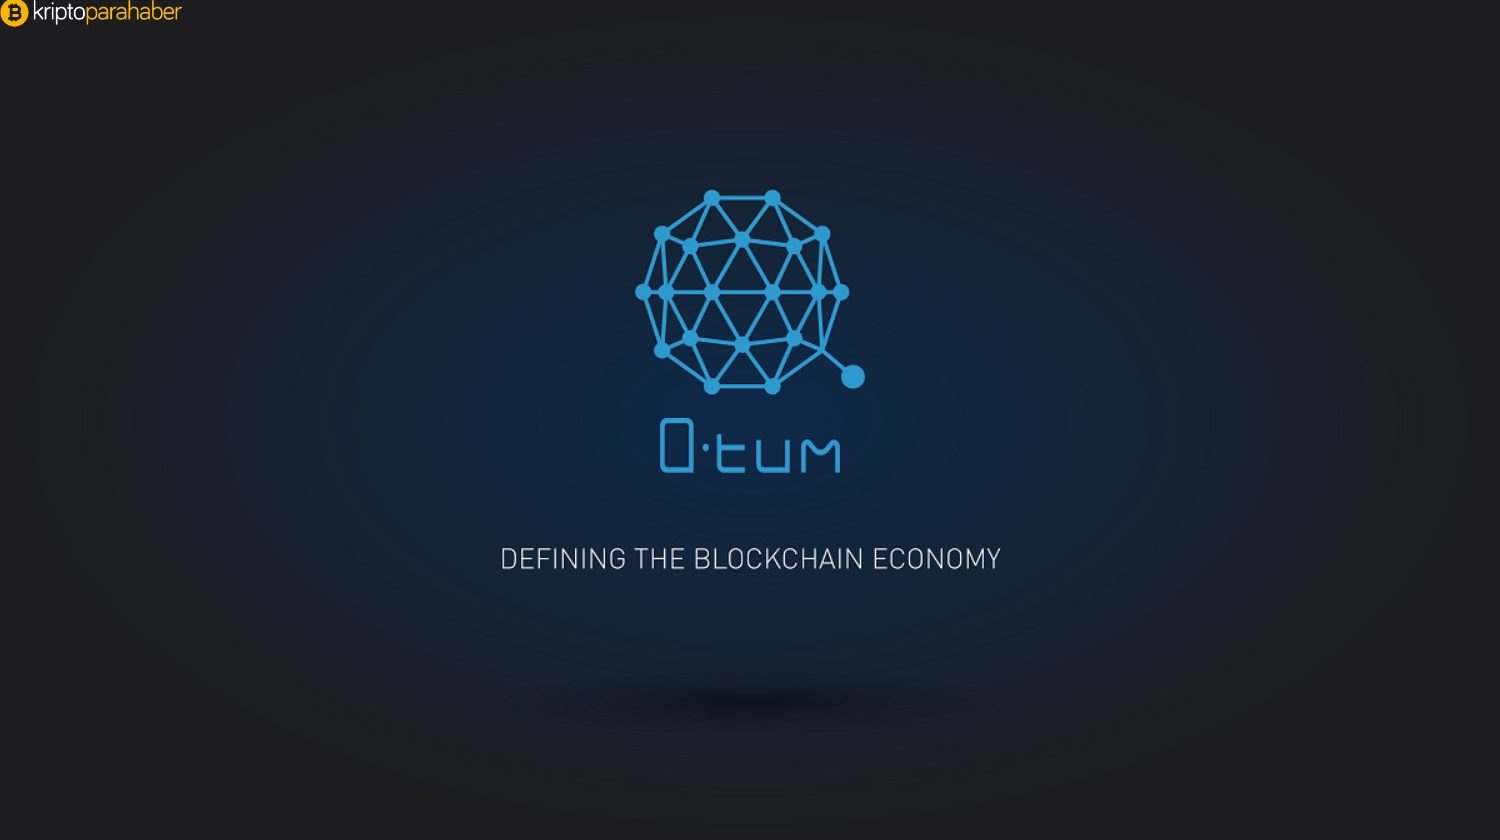 Qtum Platformu, artık Amazon Web Servisleri ile kullanılabilir